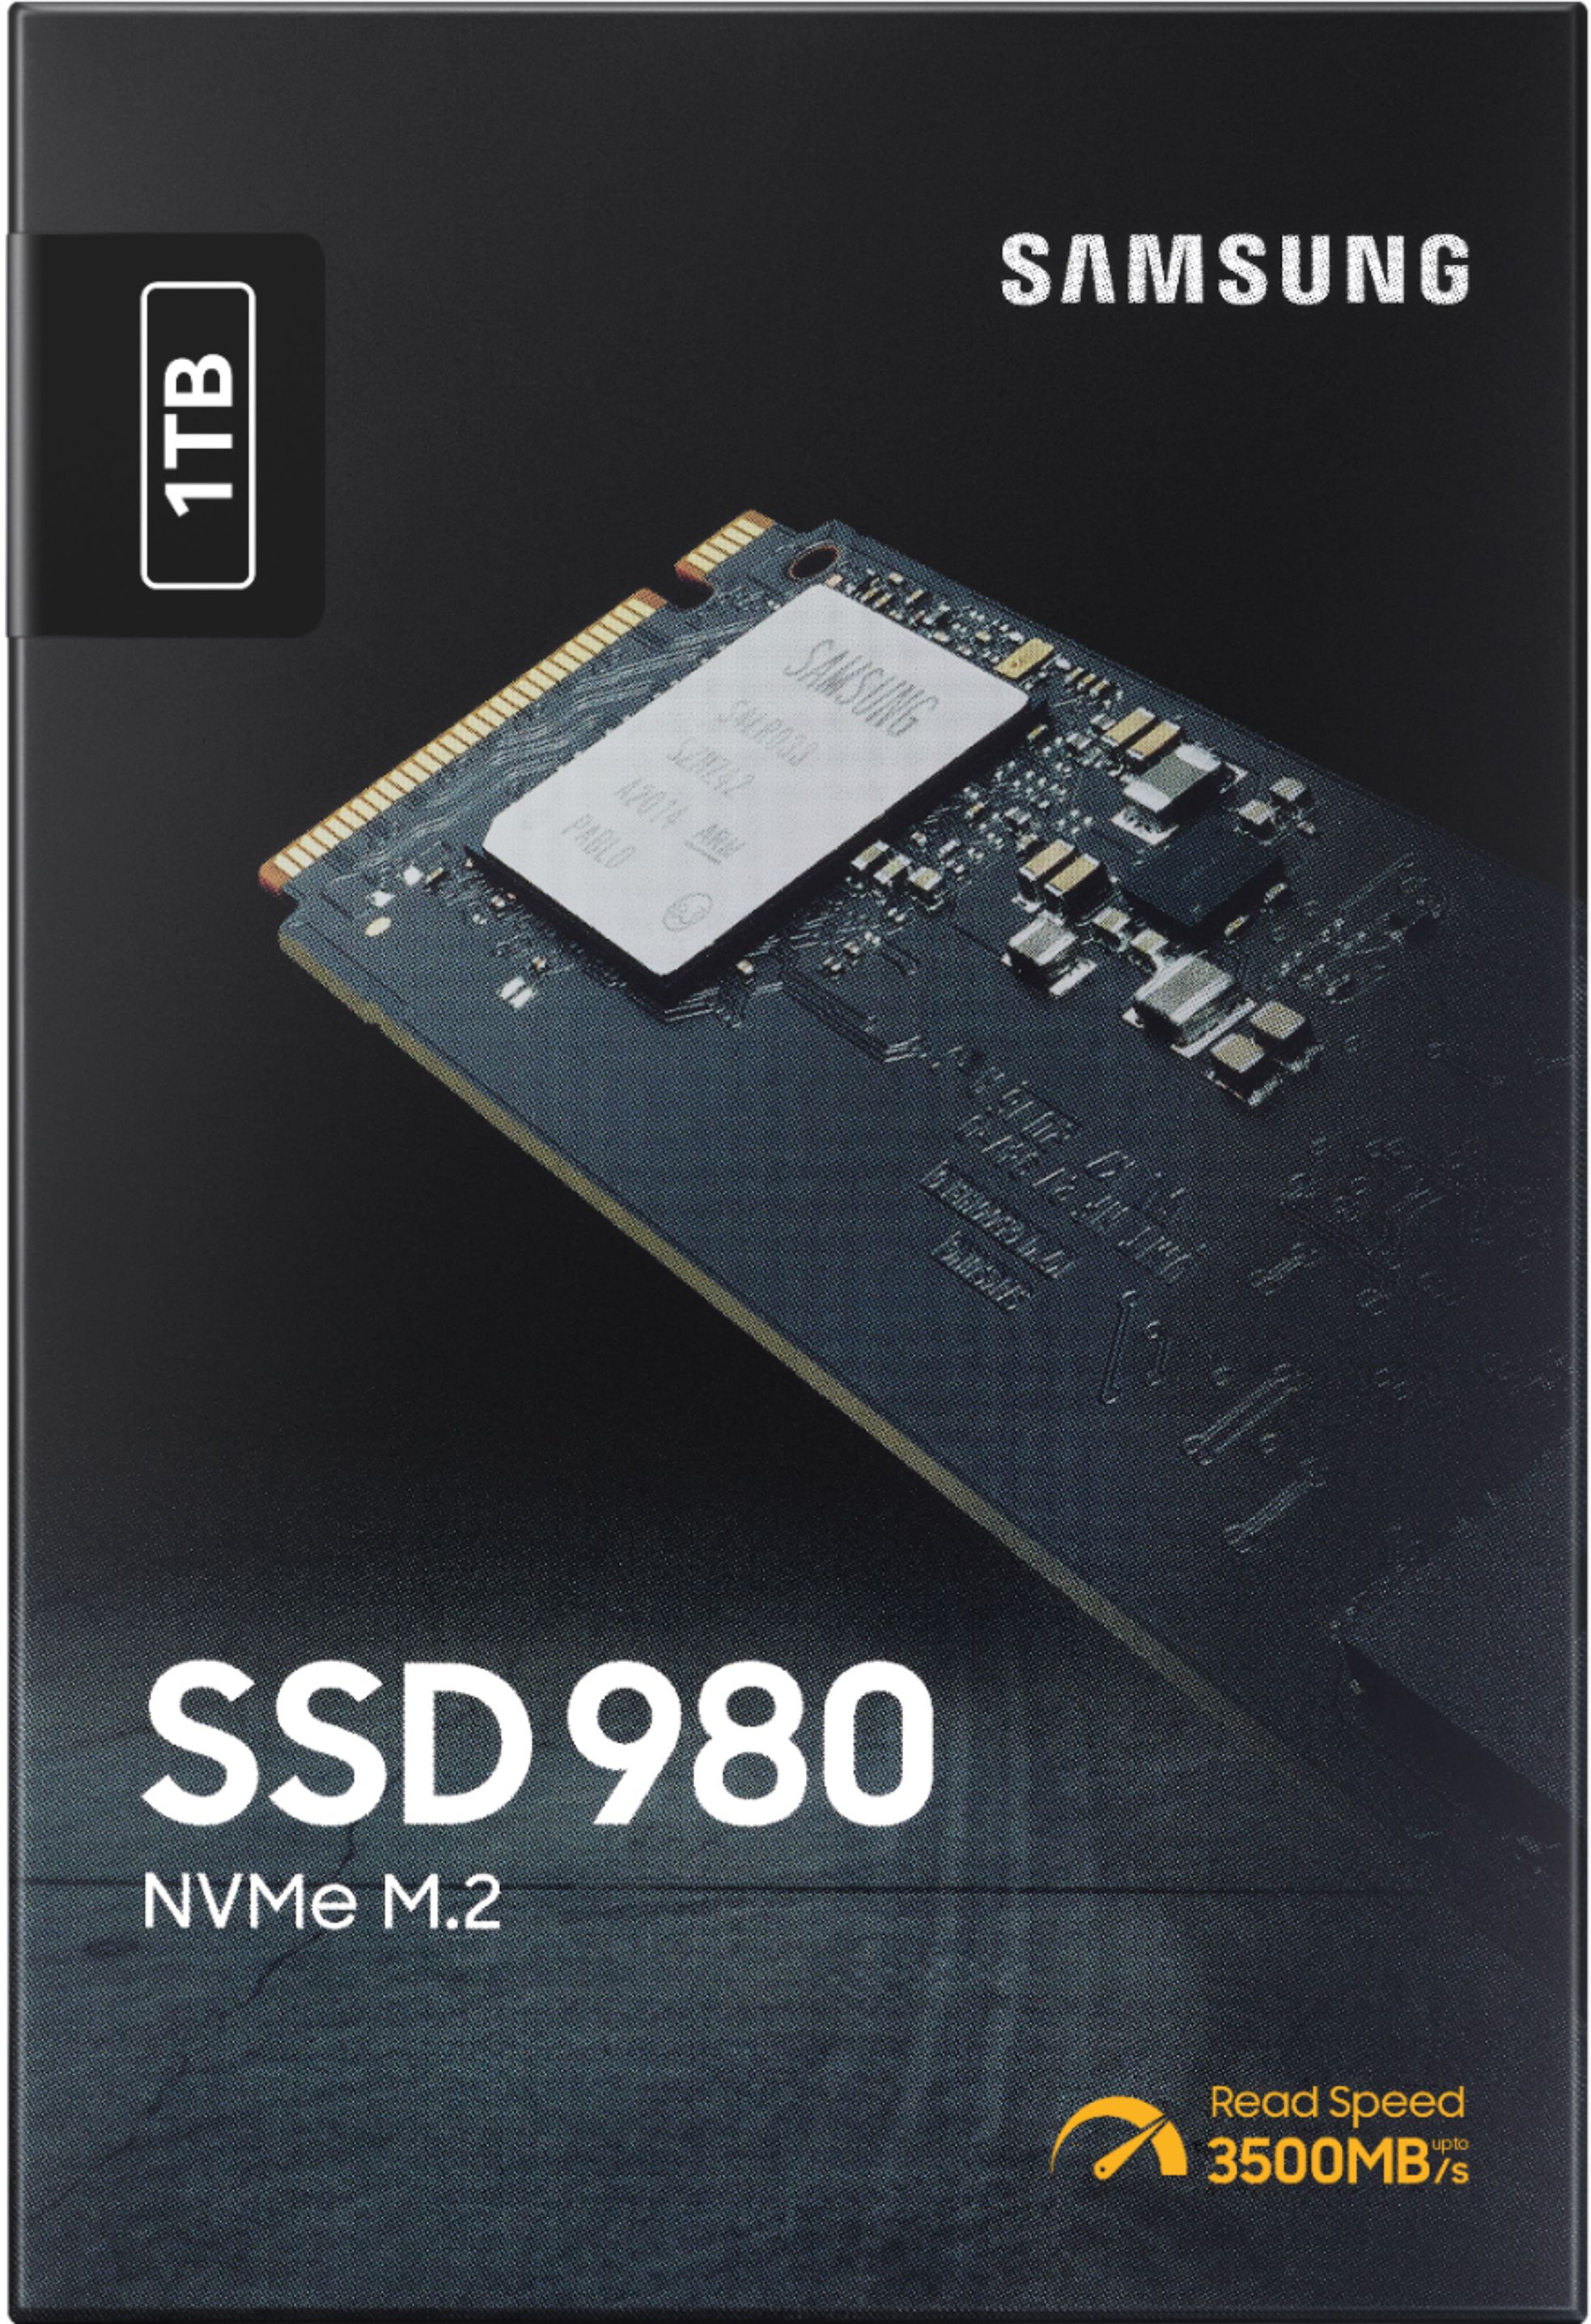 Samsung 980 1TB Internal Gaming SSD PCIe Gen 3 x4 NVMe MZ-V8V1T0B